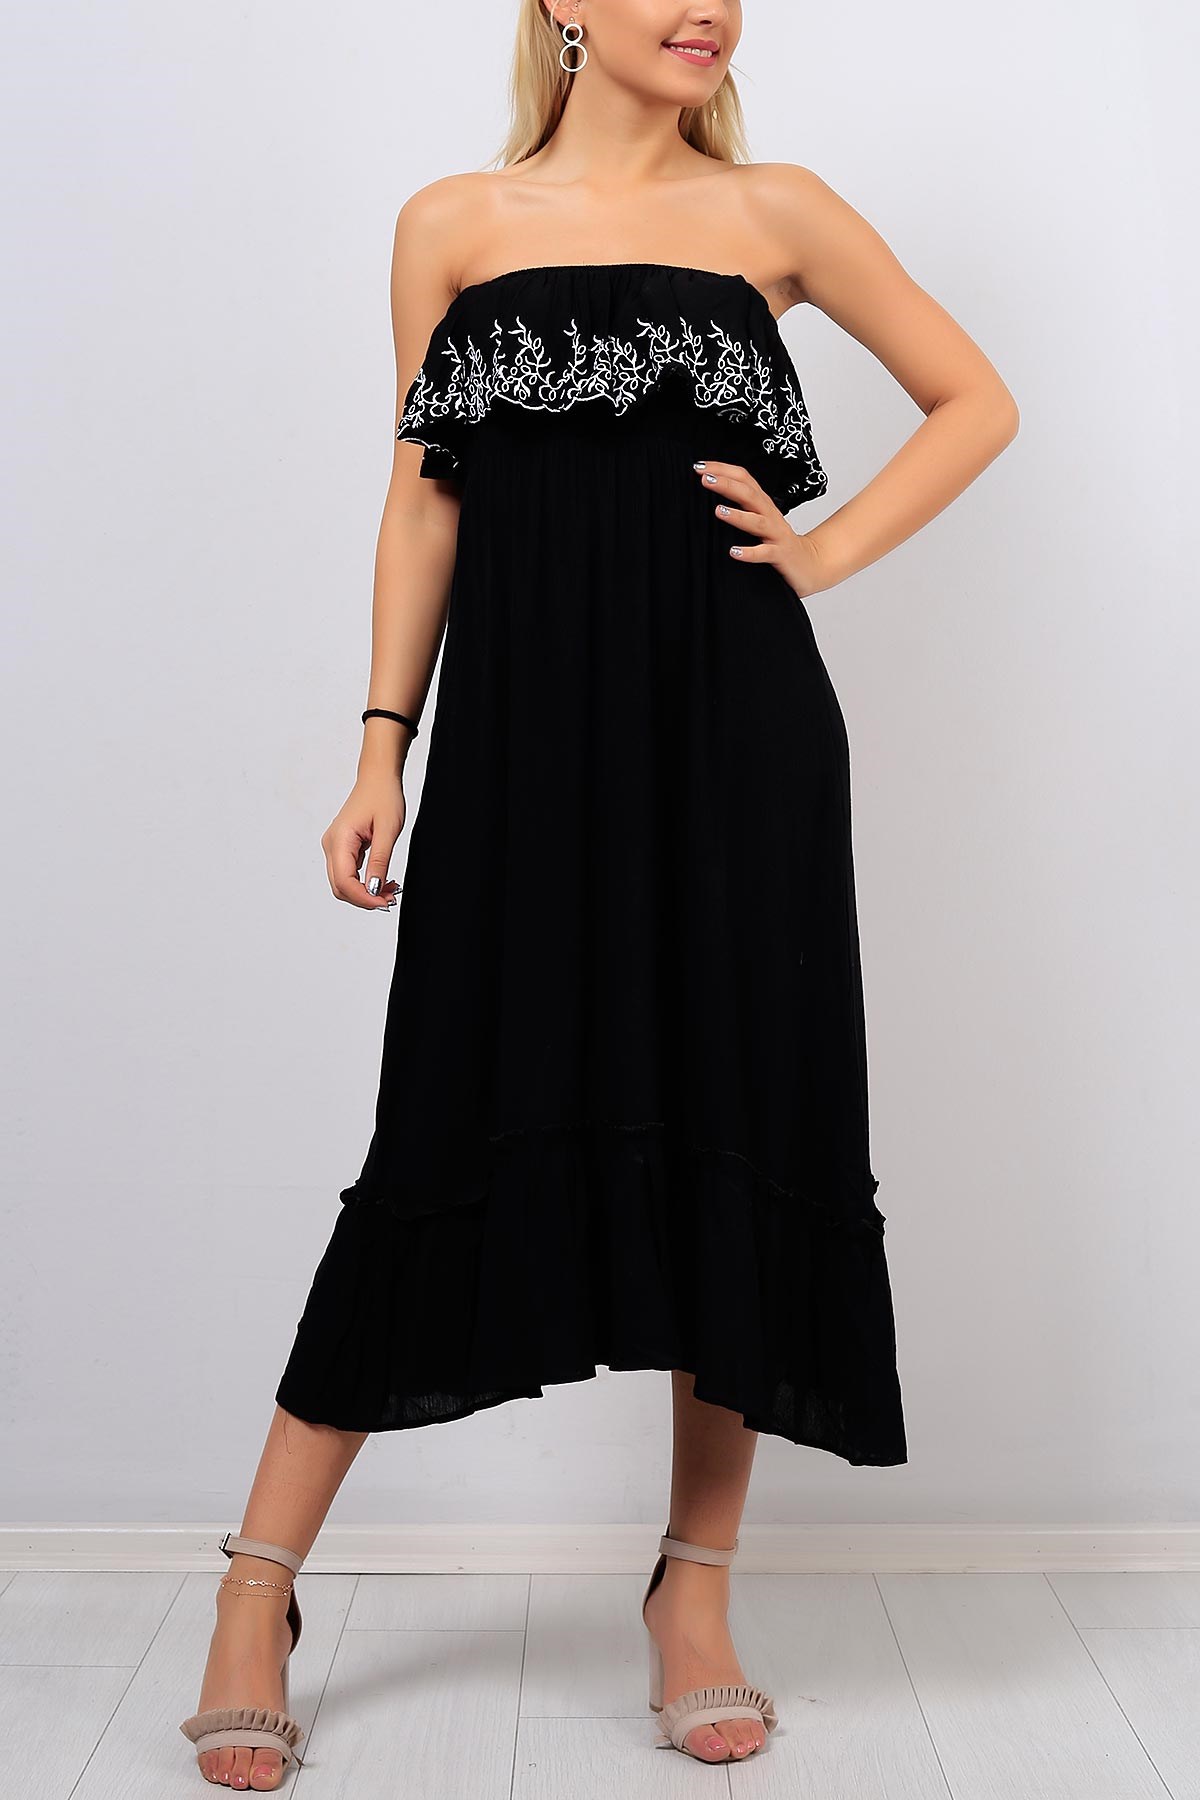 Kayık Yaka Desenli Siyah Bayan Elbise 8403B